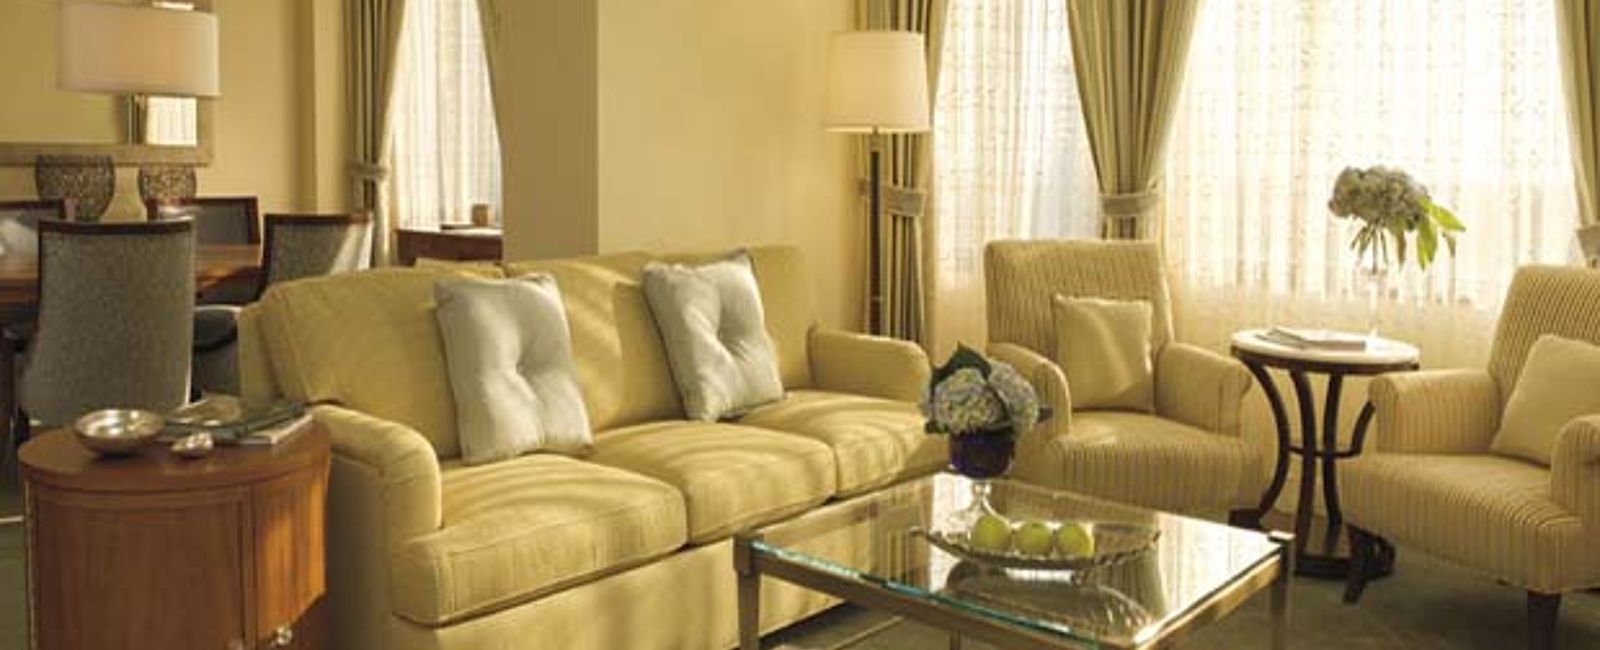 HOTEL TIPPS
 The Ritz-Carlton, Buckhead 
 Luxus Hotel mit top Weinen 